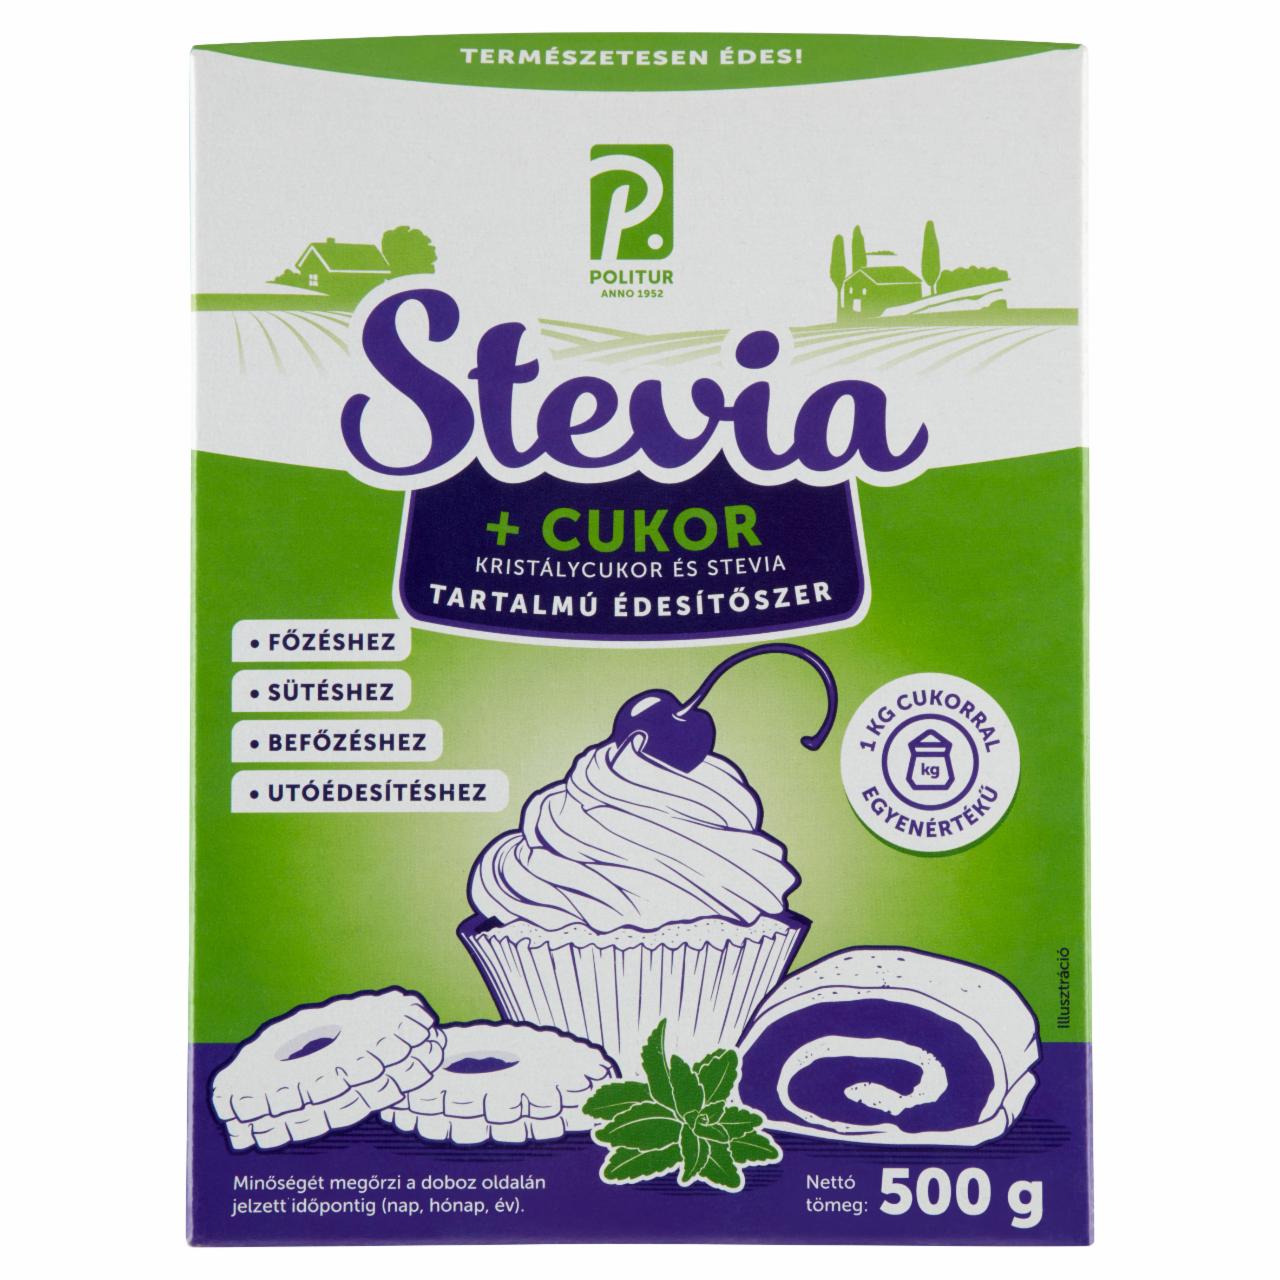 Képek - Politur Stevia + Cukor kristálycukor és stevia tartalmú édesítőszer 500 g